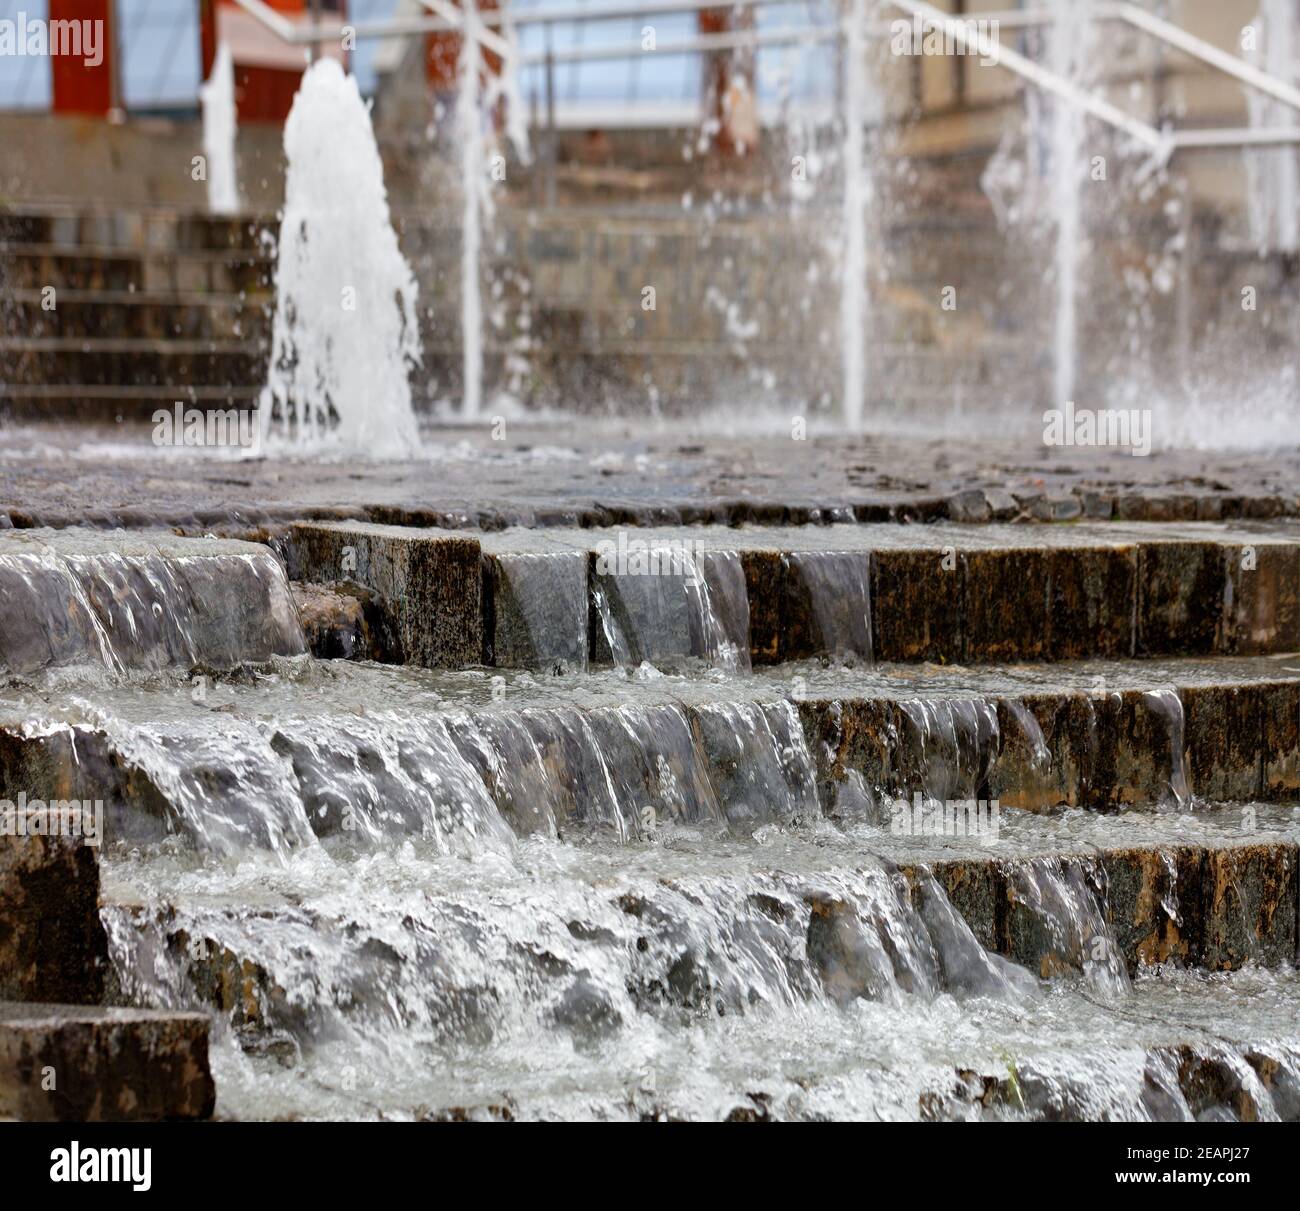 Denso ruscelli di acqua traboccano sul bordo della fontana in pietra a gradini. Foto Stock